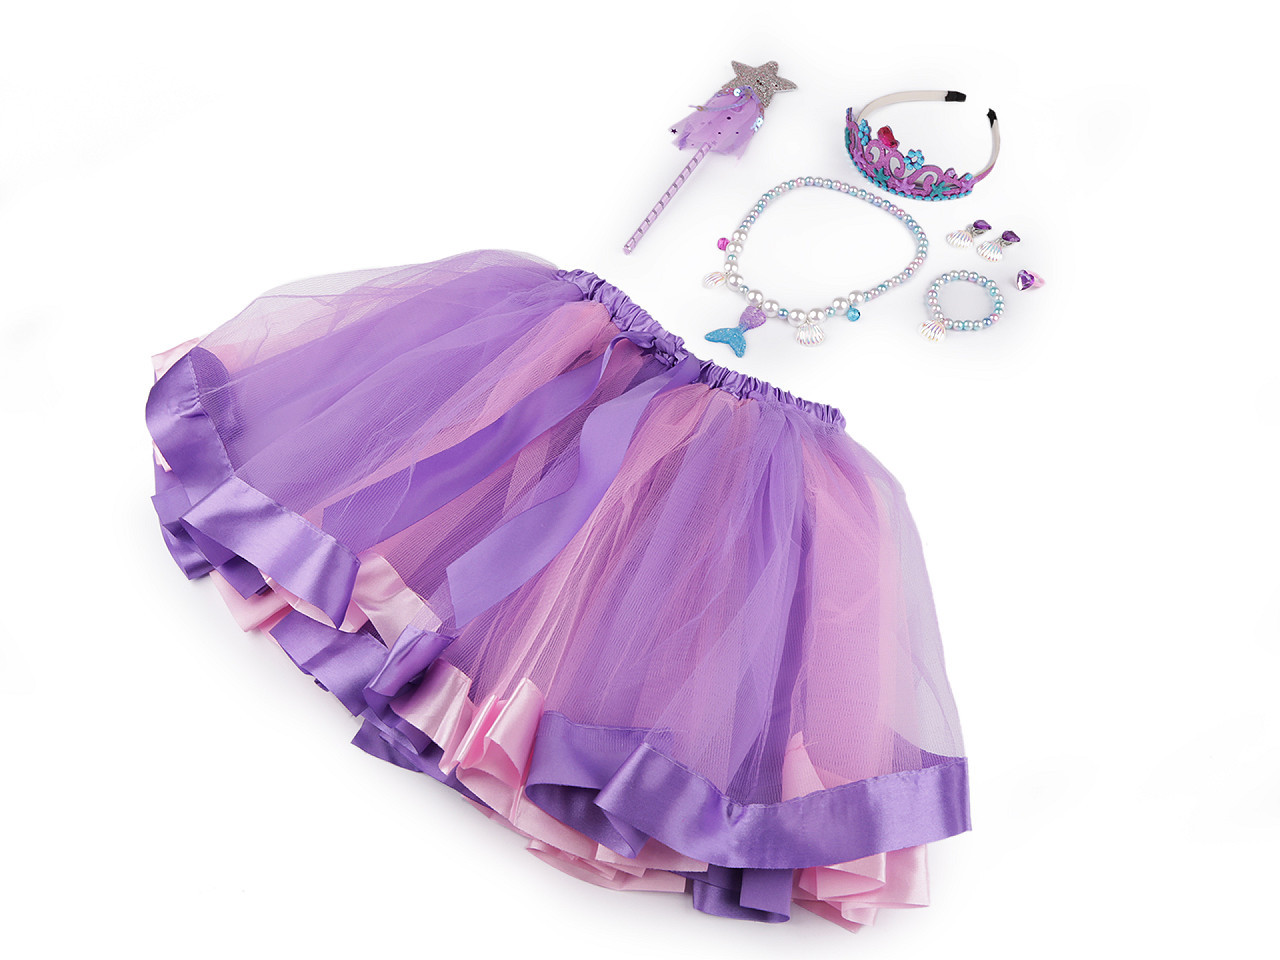 Karnevalový kostým - mořská panna, barva fialová růžová